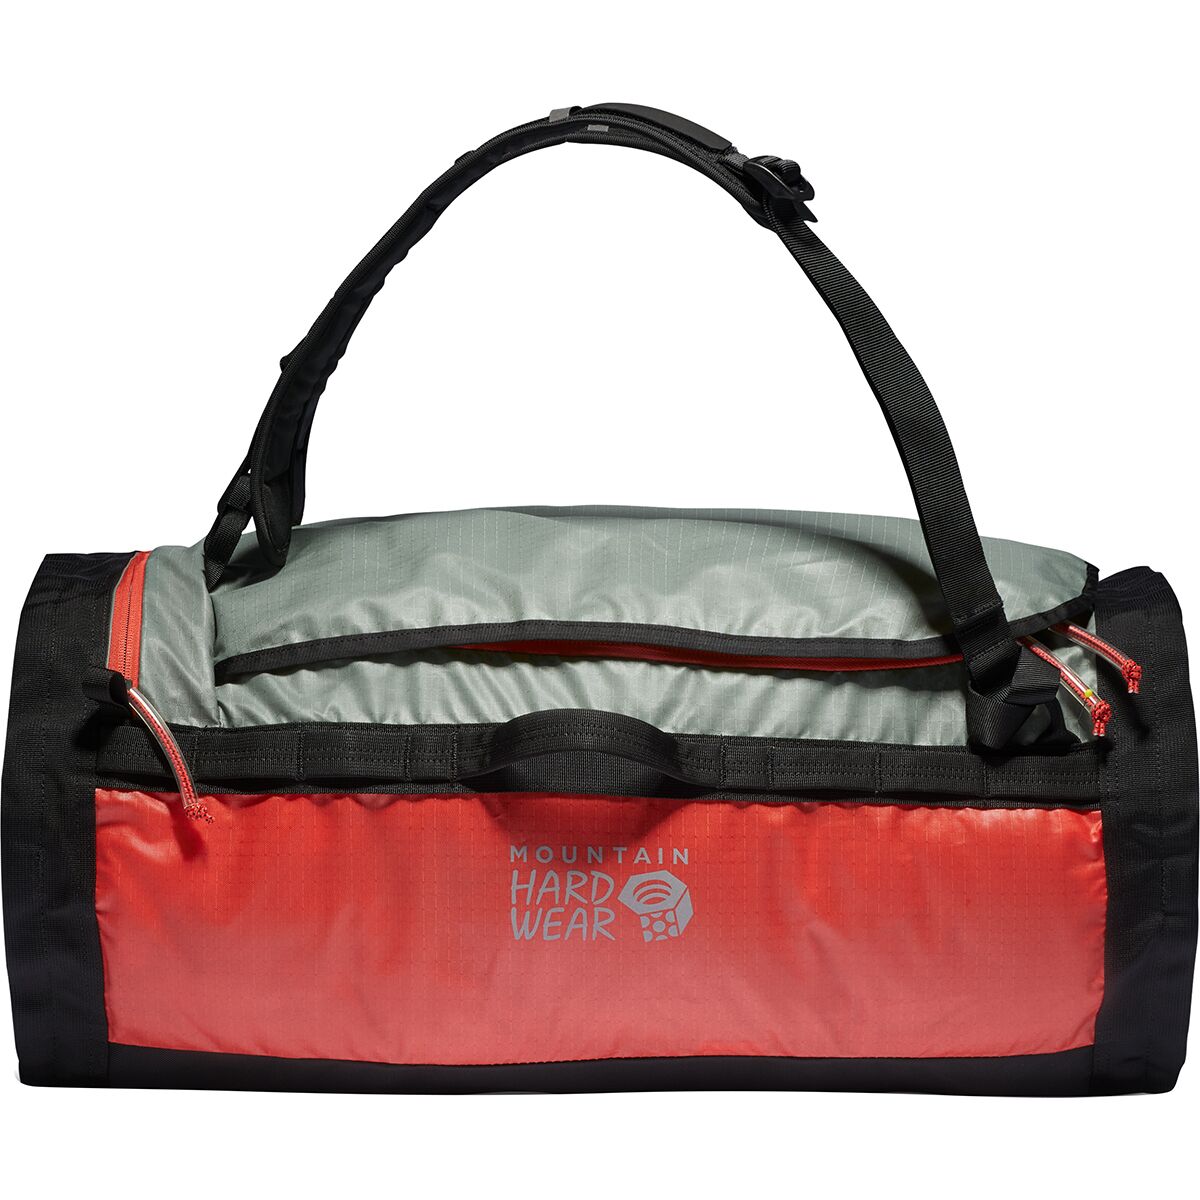 mountain hardwear travel bag